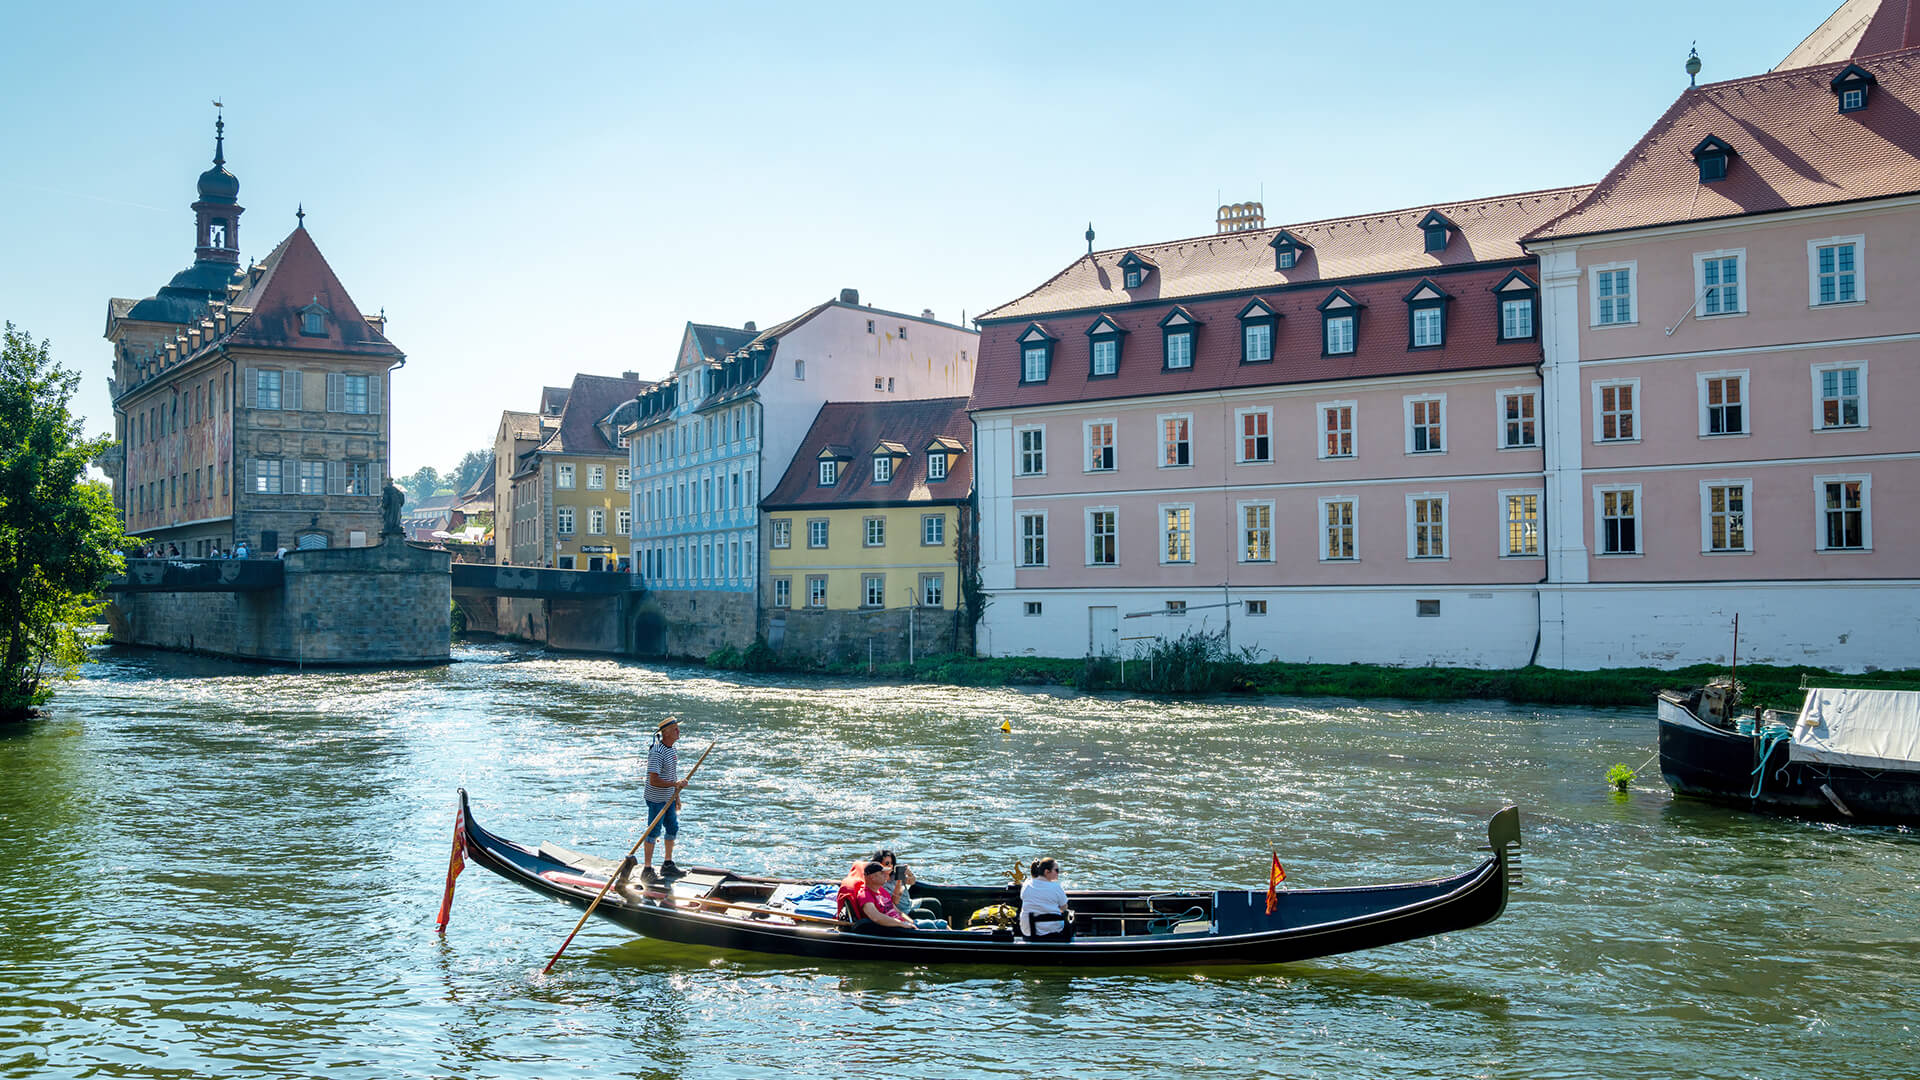 Bamberg: Gondola ride through Bamberg on the Regnitz